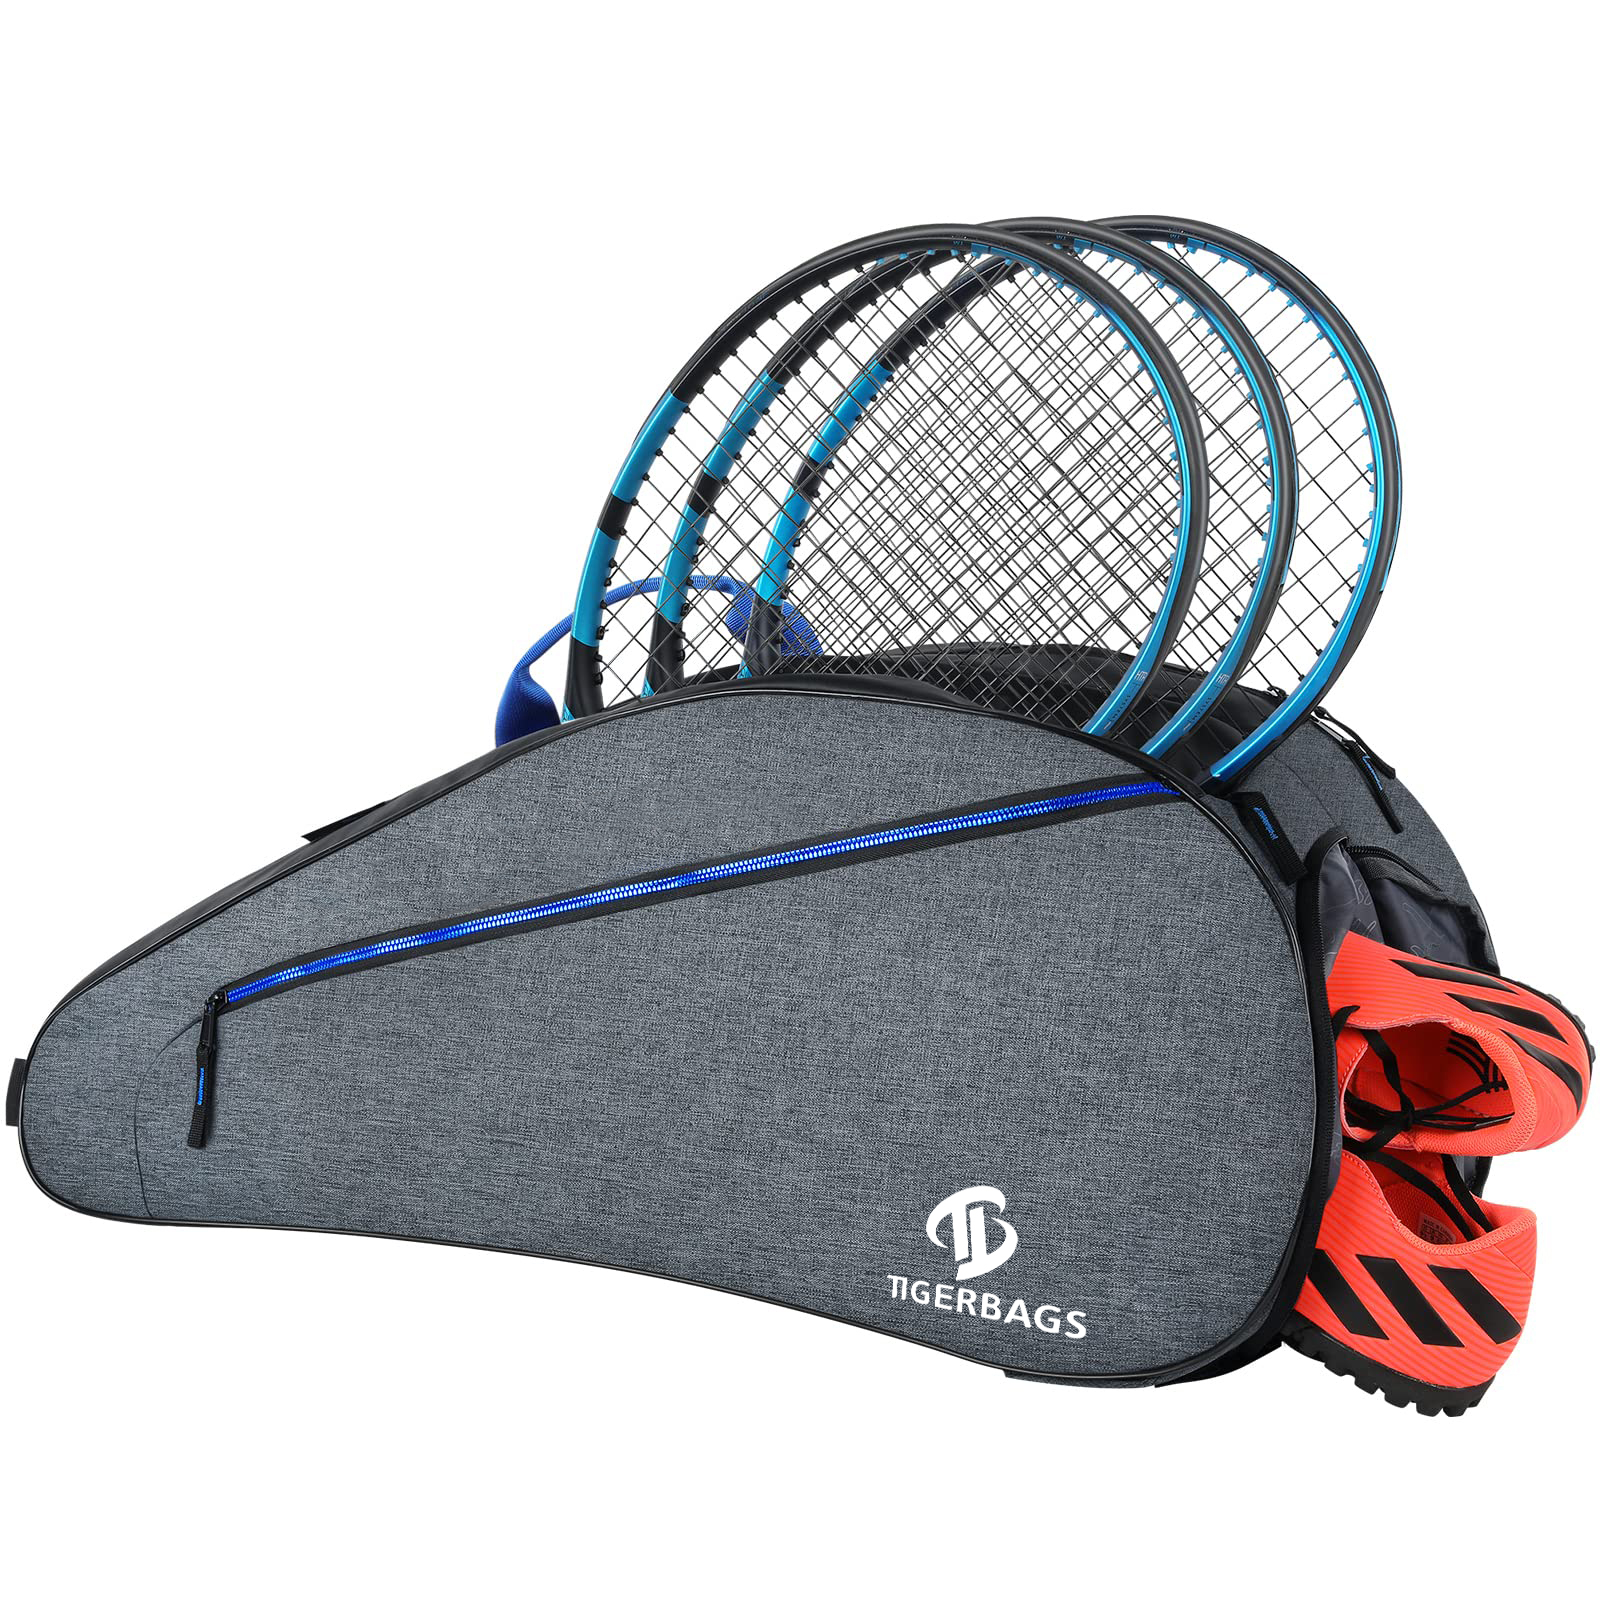 Tenisztáska, férfi és női nagy tenisz hátizsák, teniszütő táska több ütő befogadására alkalmas, cipőrekesszel